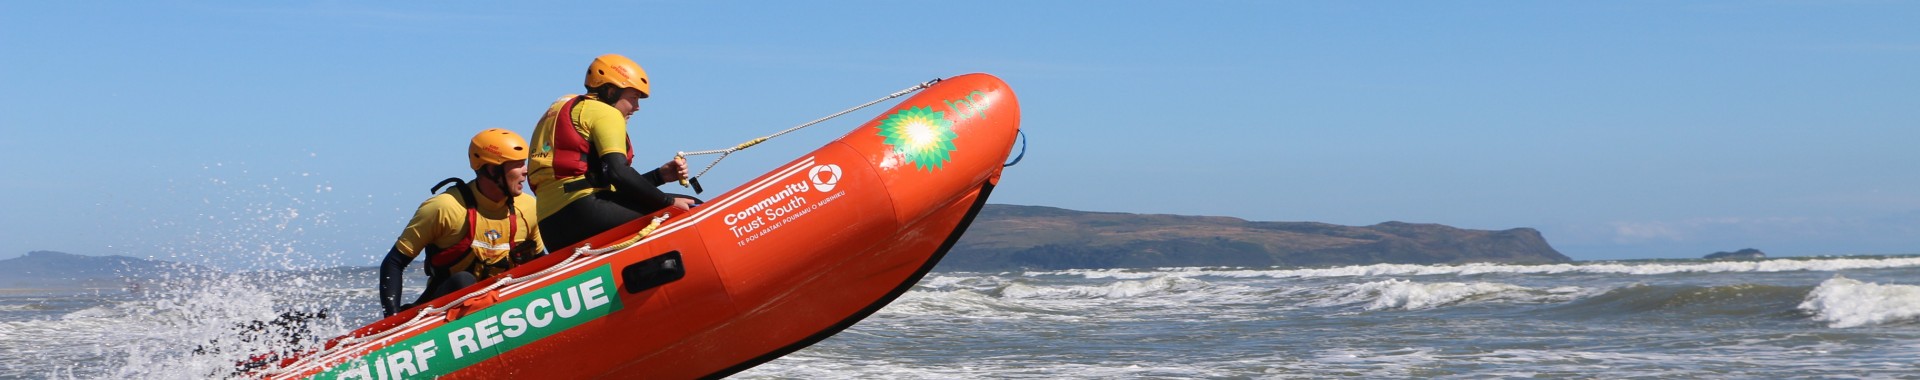 Oreti Surf Life Saving Club new surf equipment